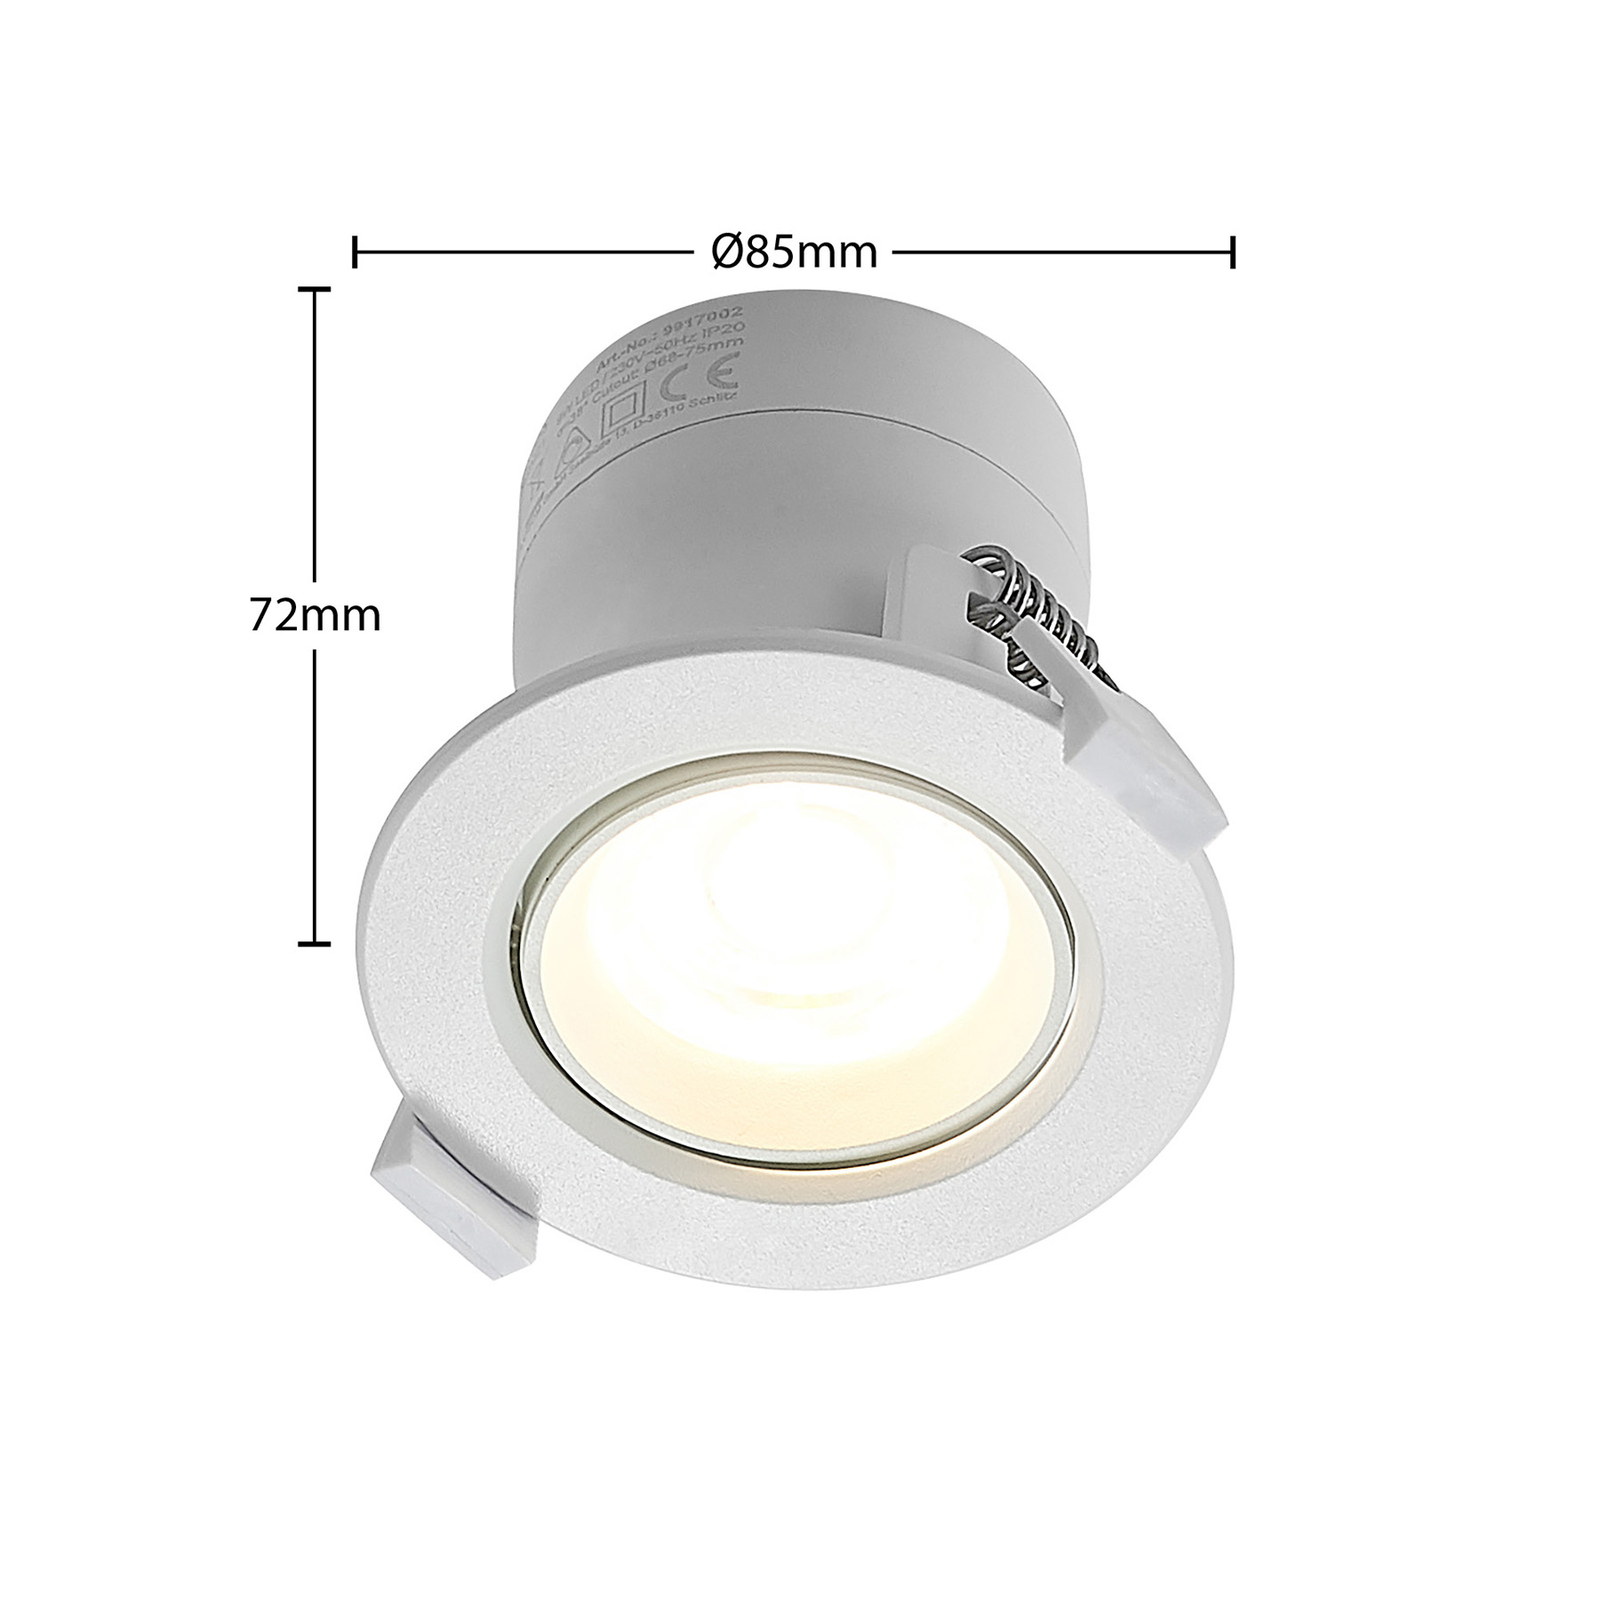 Prios LED лампа за вграждане Shima, бяла, 9W, 3000K, 2 броя, с възможност